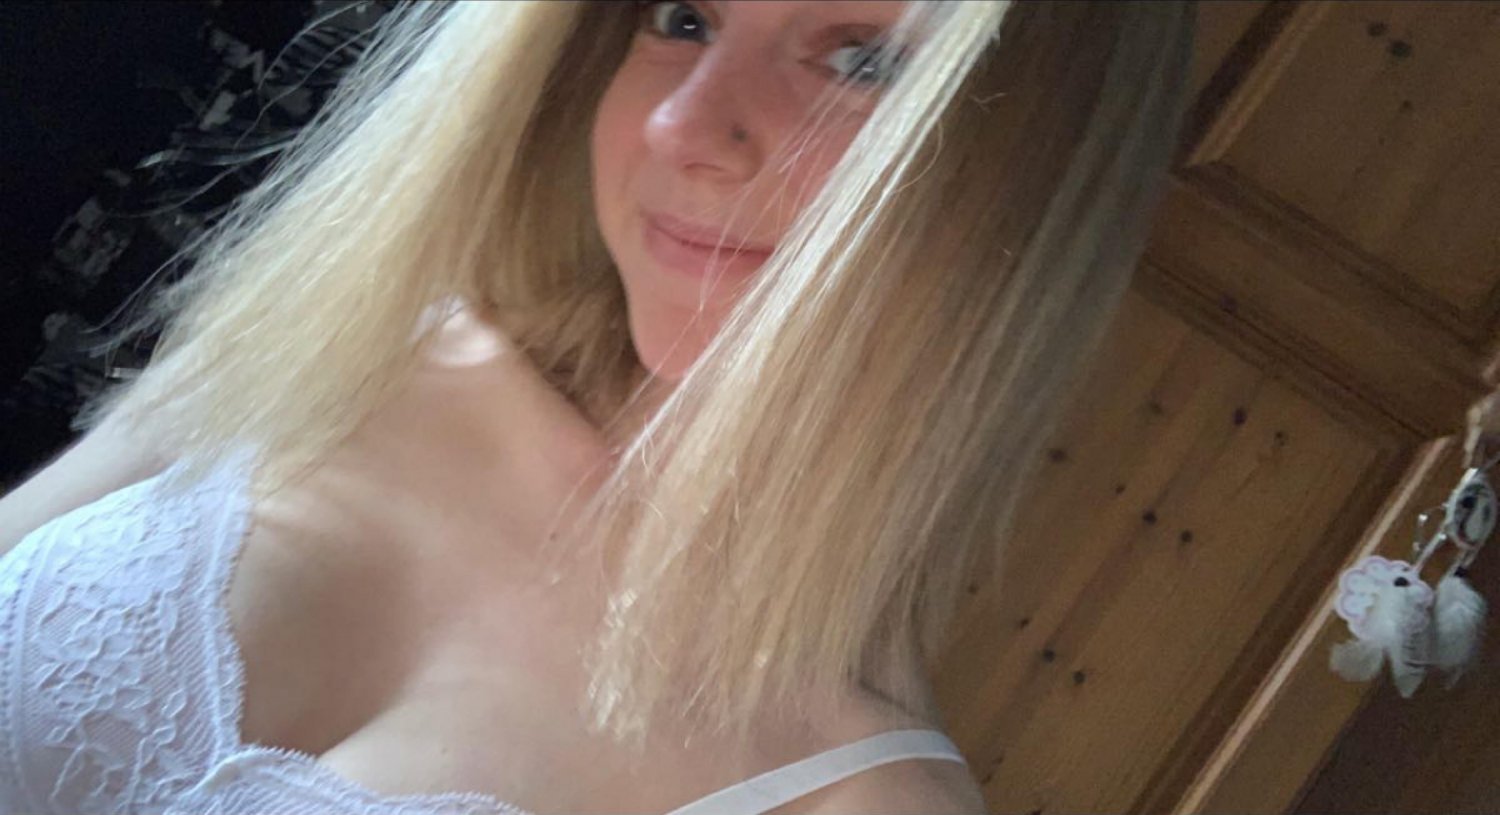 Daisy 19 - Porn Videos & Photos - EroMe